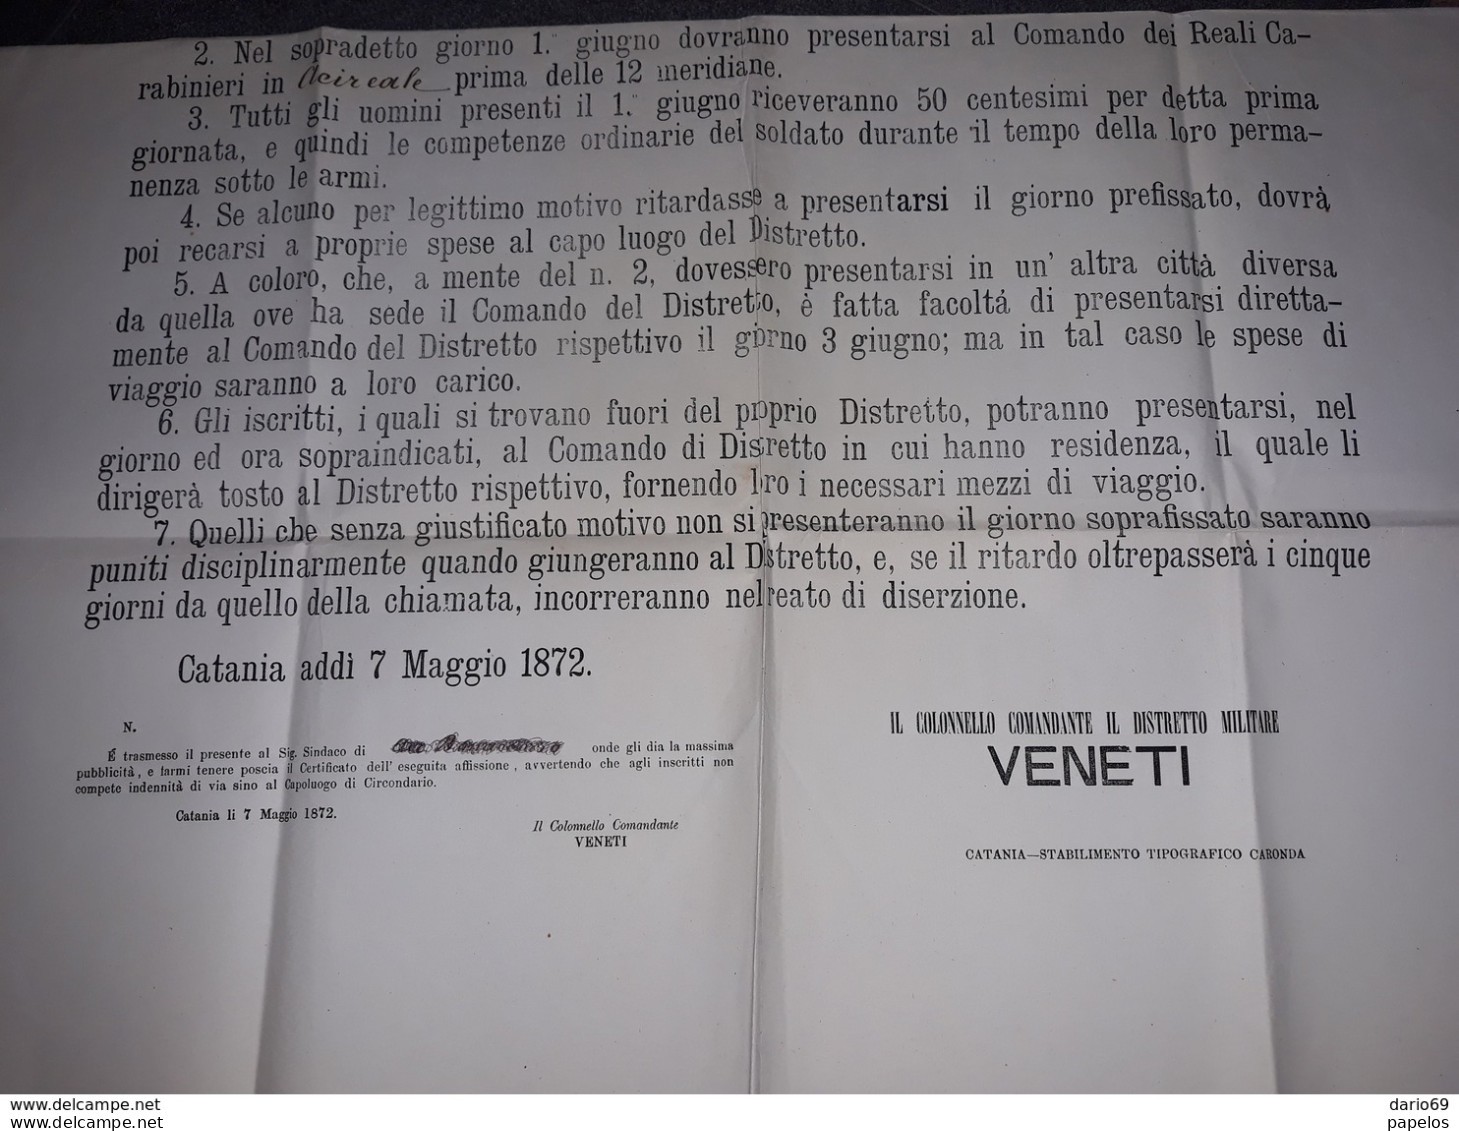 1872 CATANIA  MANIFESTO  18°  DISTRETTO MILITARE - Historical Documents